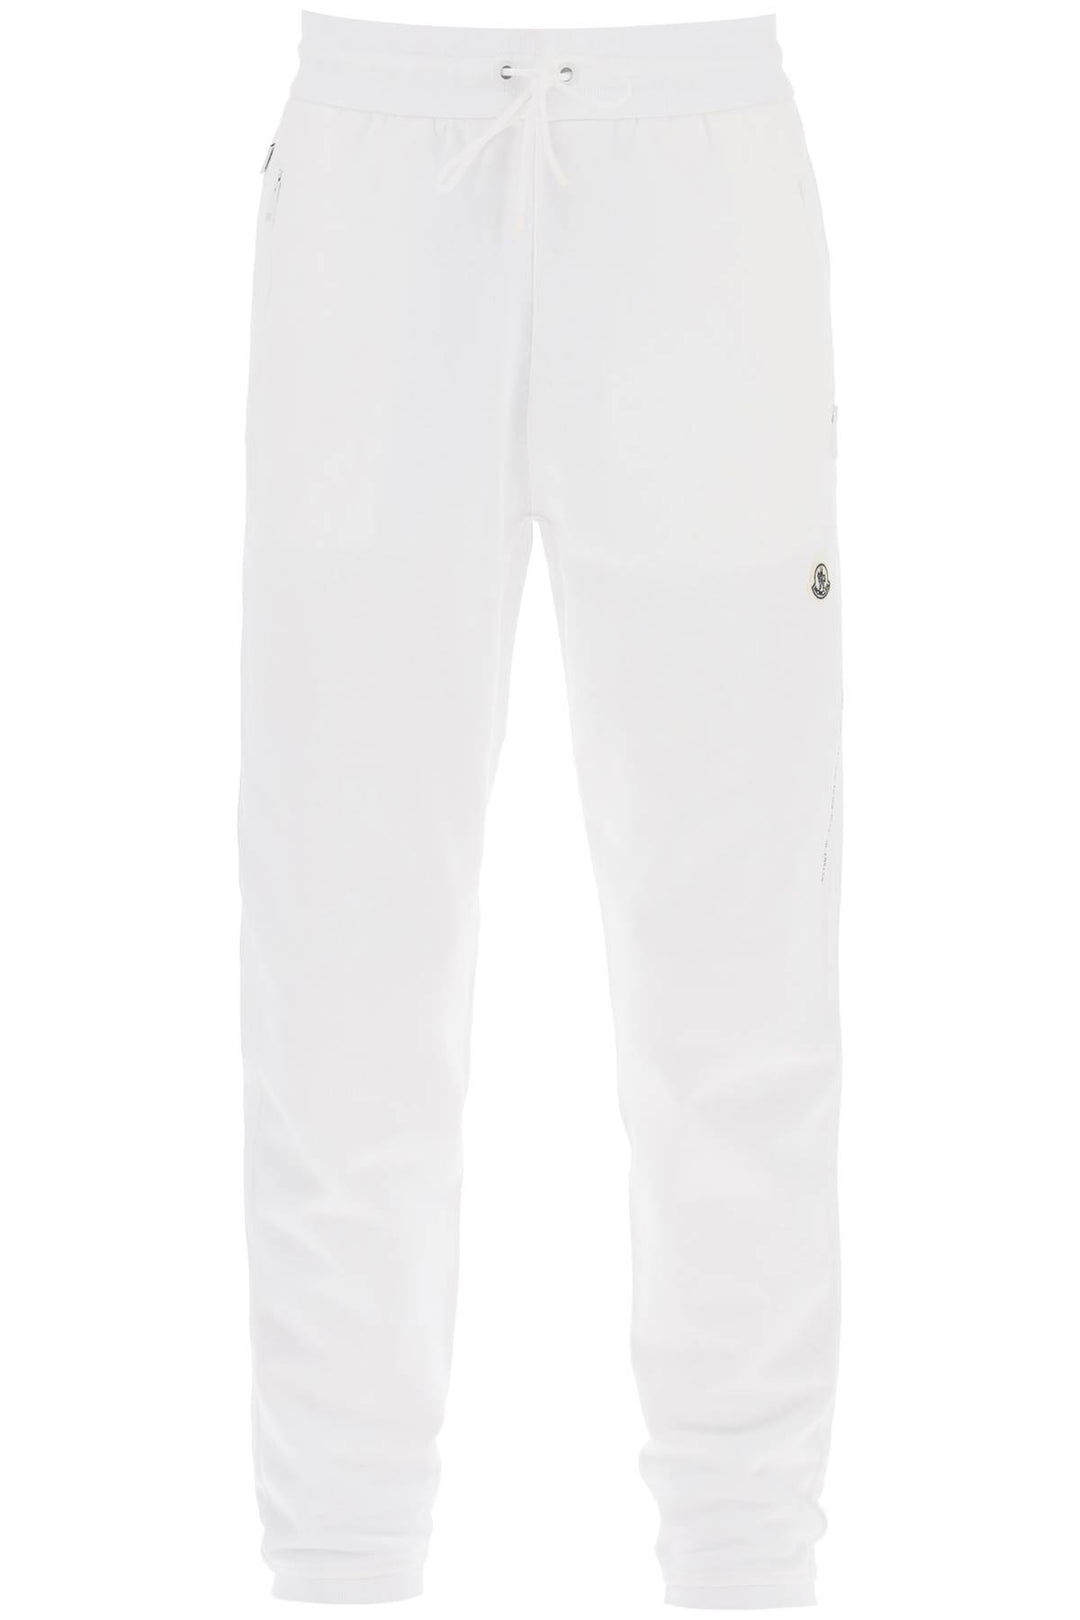 Moncler X Fragment Hiroshi Fujiwara Tapered Cotton Sweatpants   Bianco